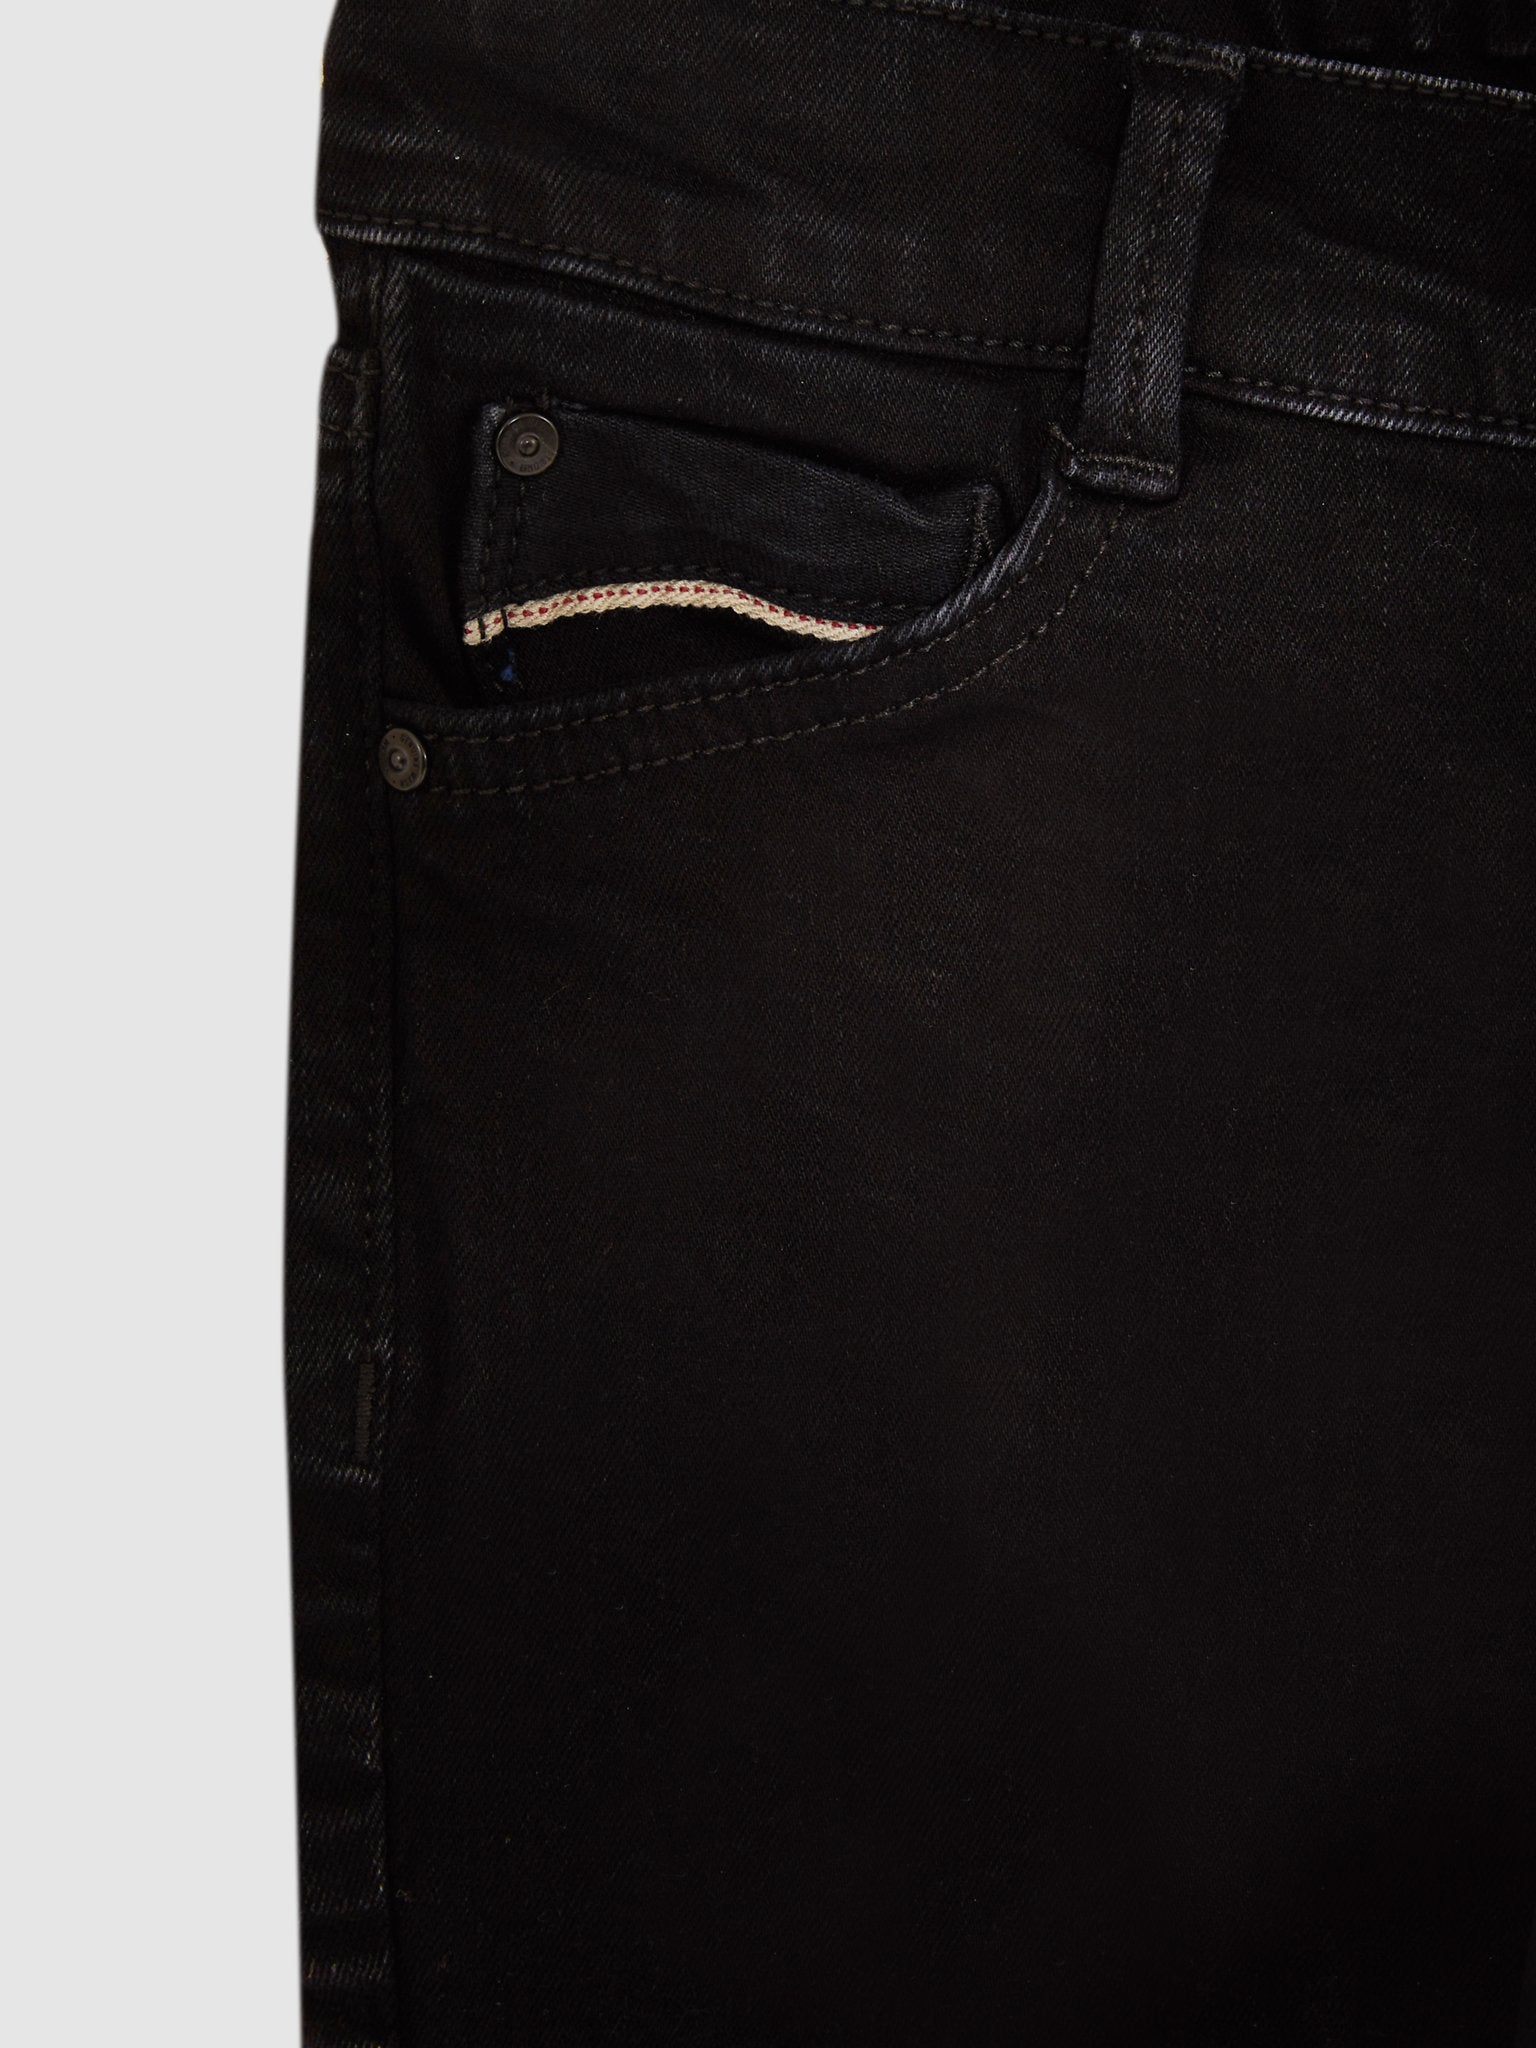 Jongens Jeans NEW COOPER BCALLIAS WASH van LTB in de kleur CALLIAS WASH in maat 176.